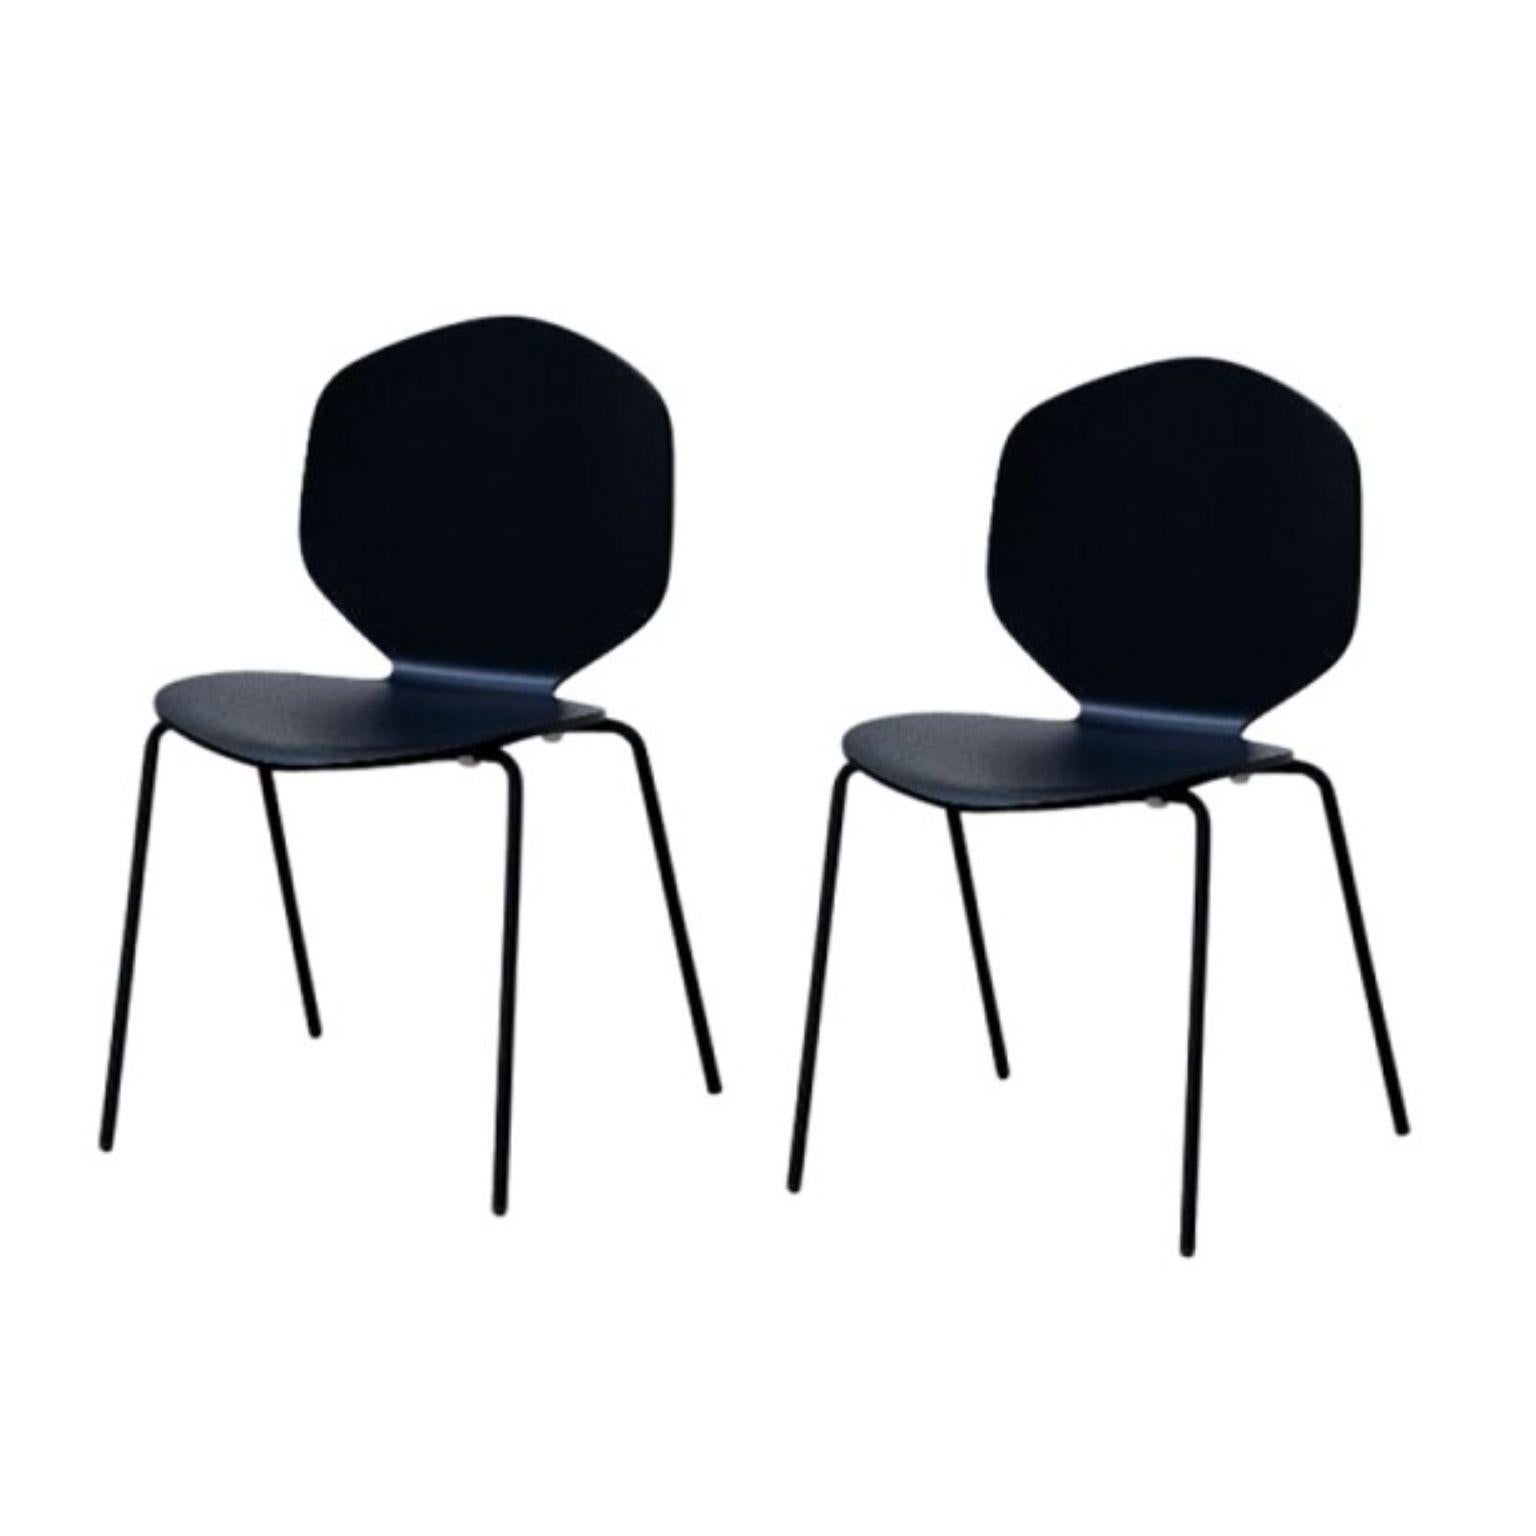 2er set LouLou stühle by Shin Azumi
MATERIALIEN: Gestell aus schwarzem oder weißem oder verchromtem Metall, Sitz und Rückenlehne aus natürlichem Eichenfurnier oder schwarz oder weiß gebeizt. 
Technik: Lackiertes Metall, natürliches und gebeiztes